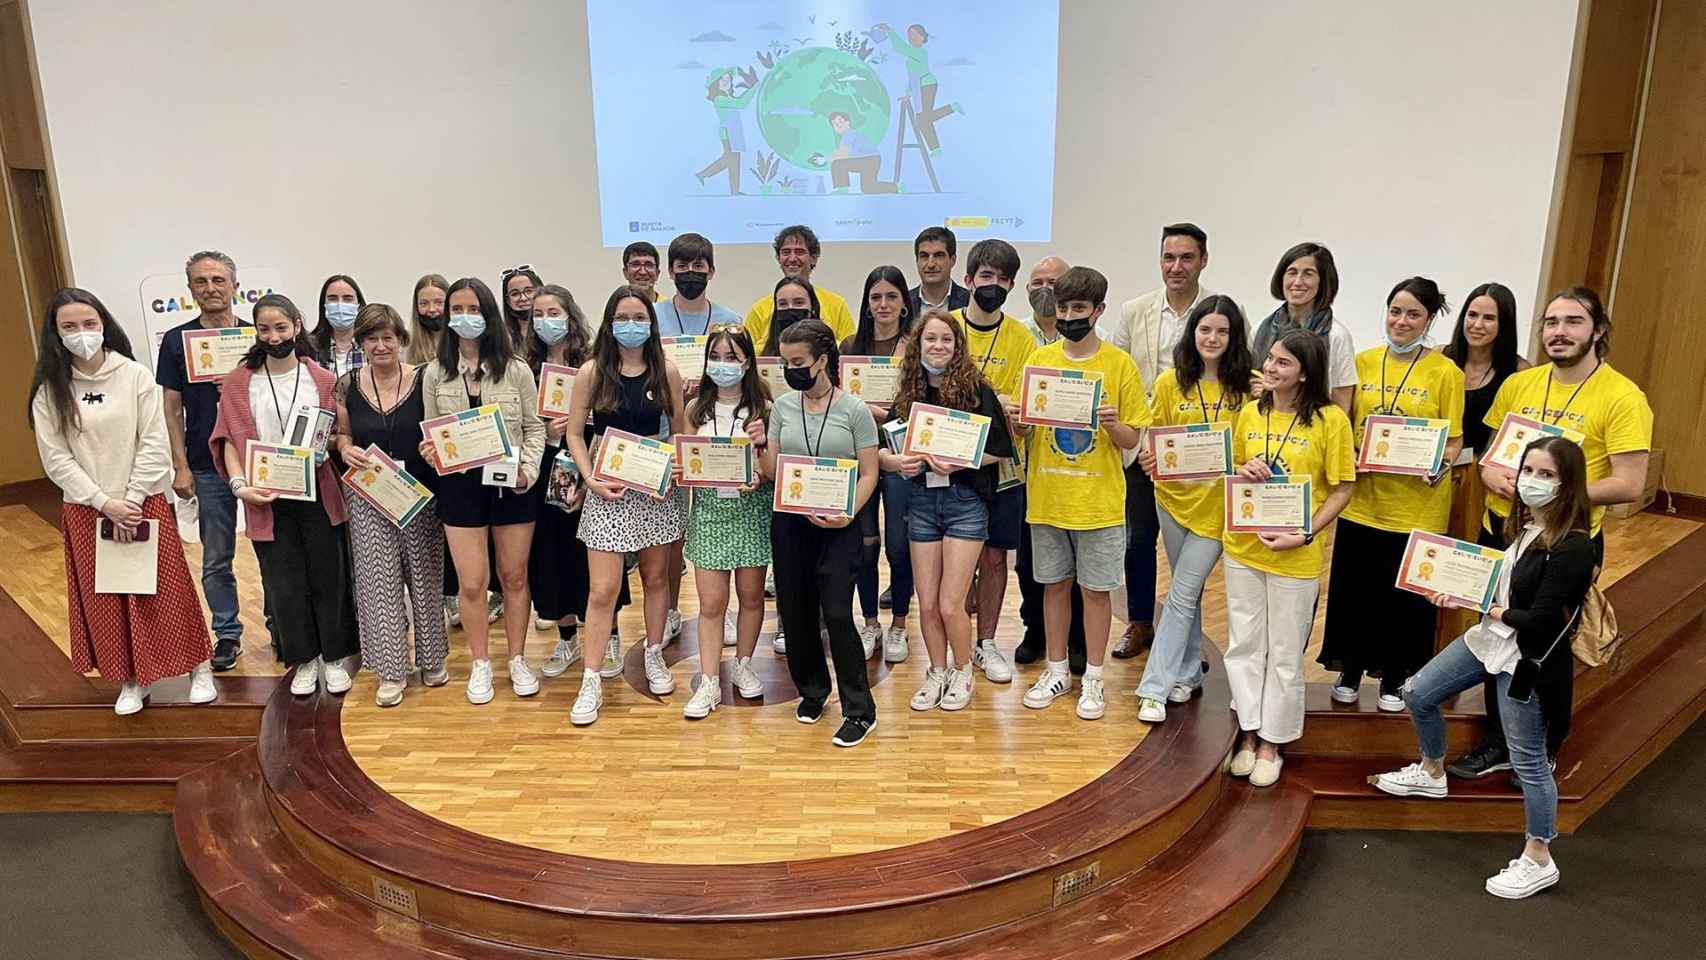 Ganadores de la 17ª edición de la feria ‘Galiciencia’, celebrada en Ourense.